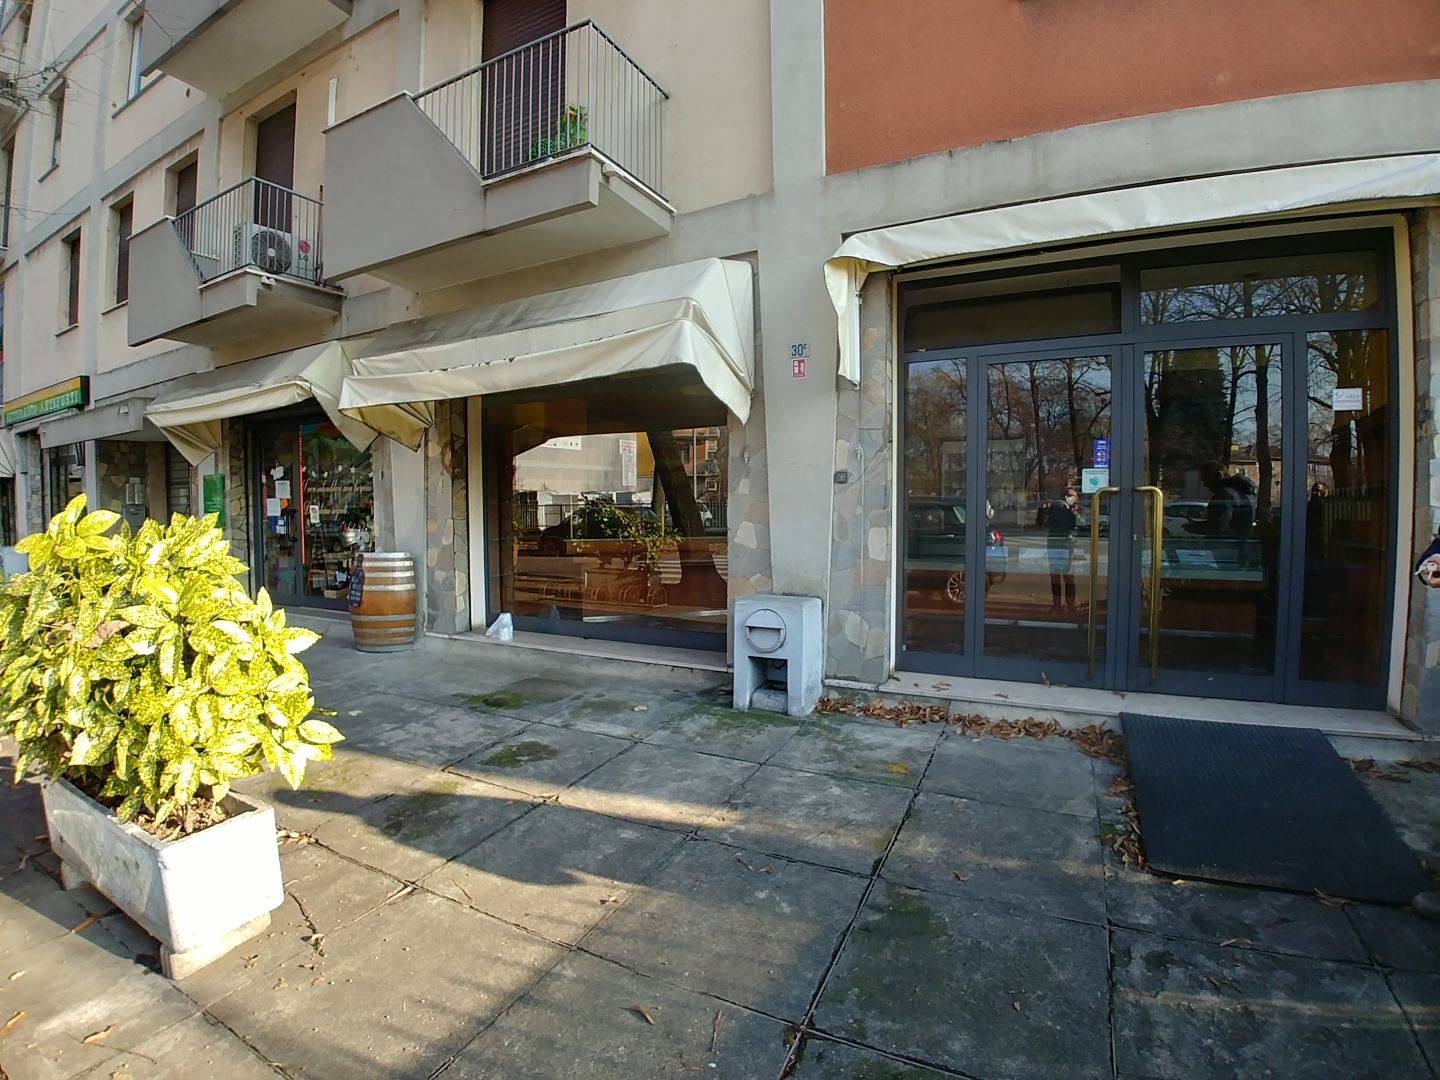 Negozio / Locale in vendita a Parma, 3 locali, zona Zona: Molinetto - Via Villetta , prezzo € 75.000 | CambioCasa.it